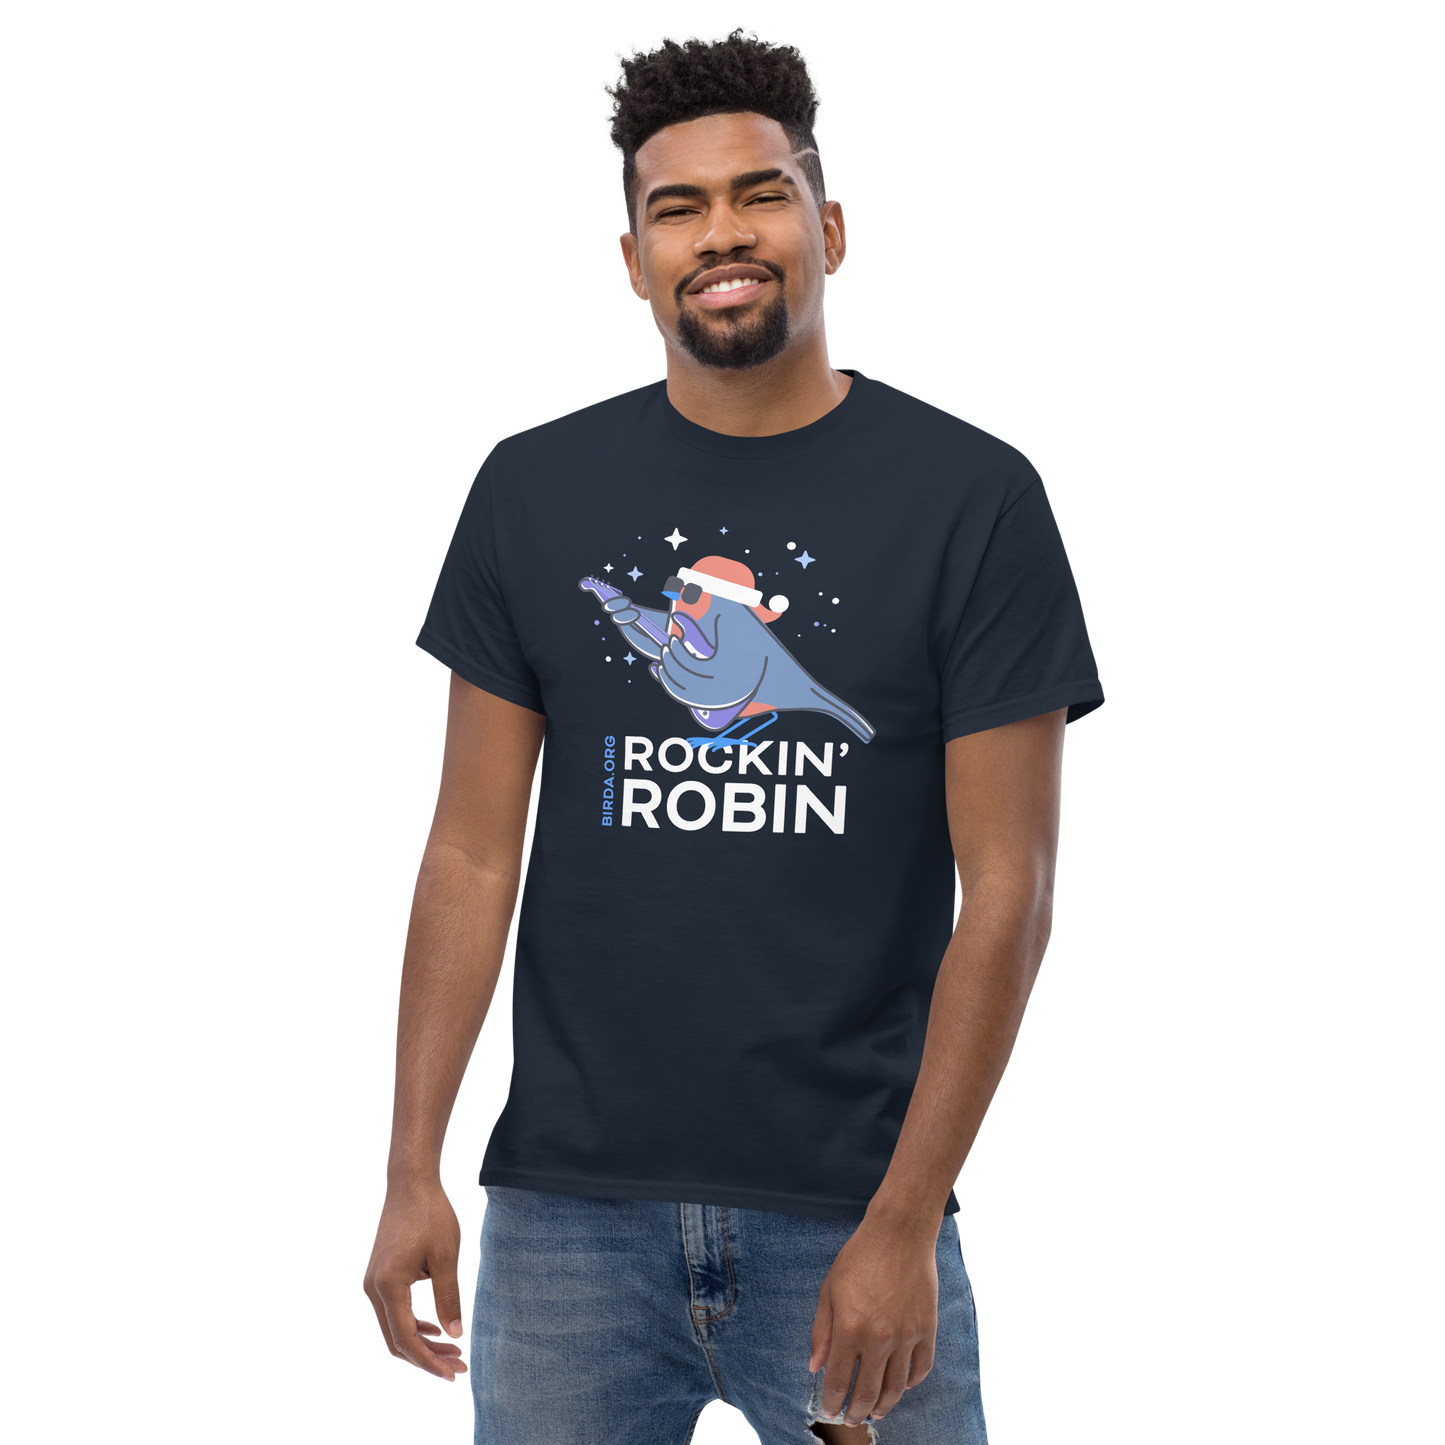 Rockin' Robin T-Shirt